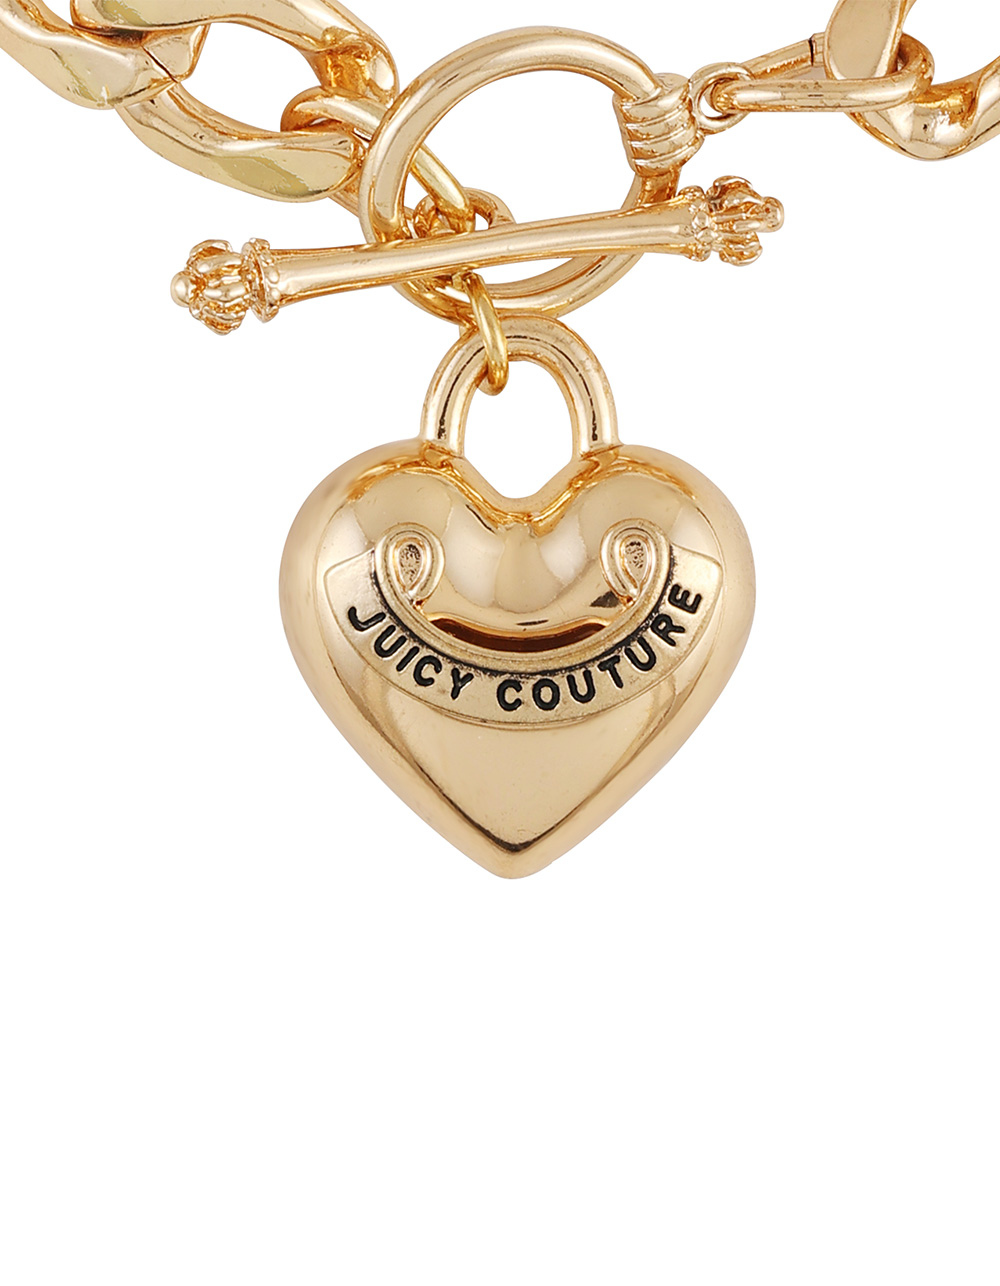 Juicy Couture Heart Pendant Bracelet